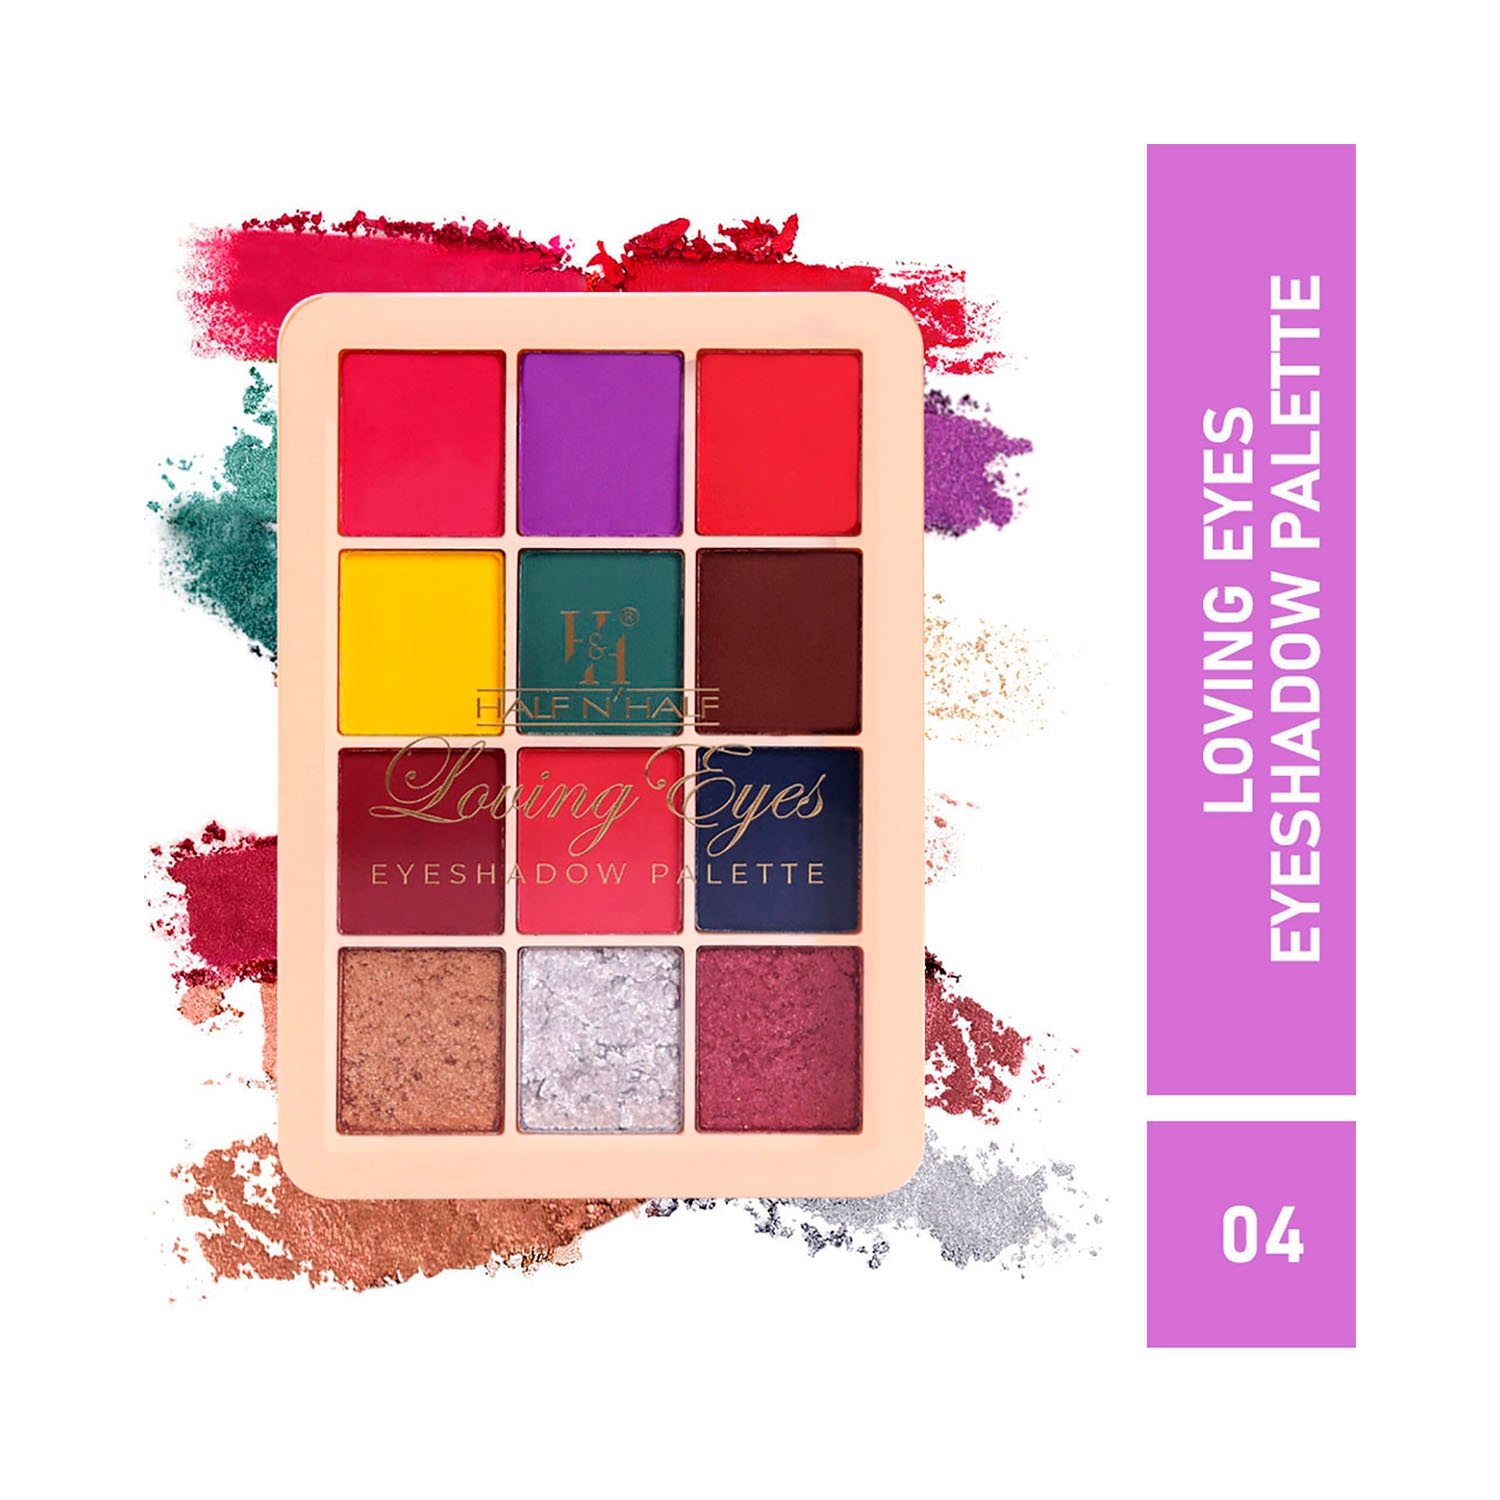 Half N Half 12 Colors Loving Eyeshadow Palette - 04 Shade (9.5g)